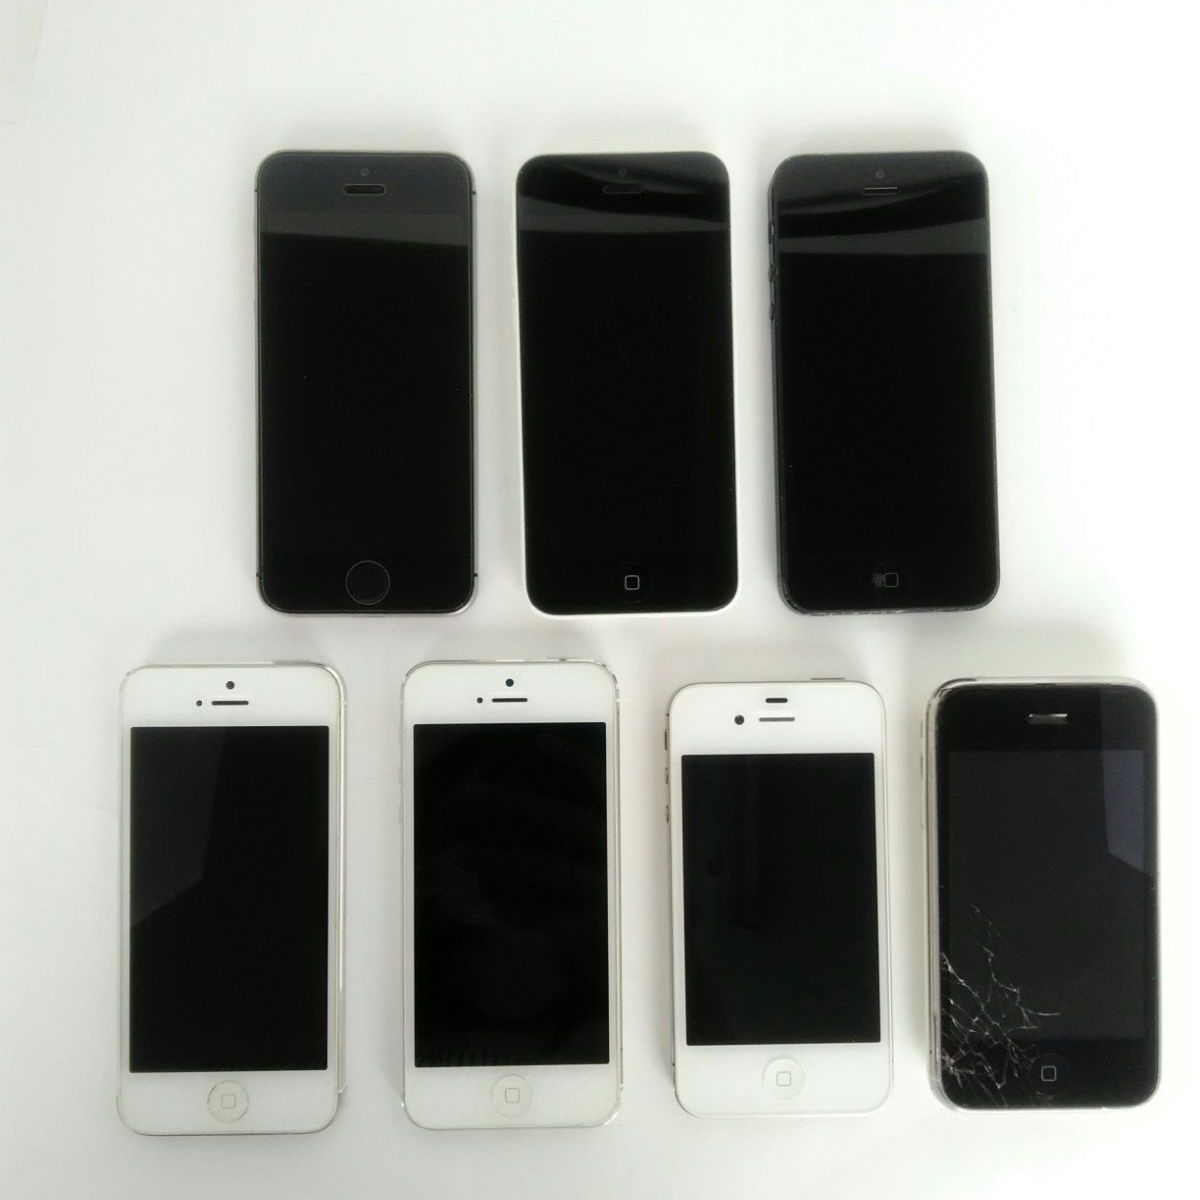 20%OFFiPhone4台 A363-A383-A381-A34 スマートフォン本体